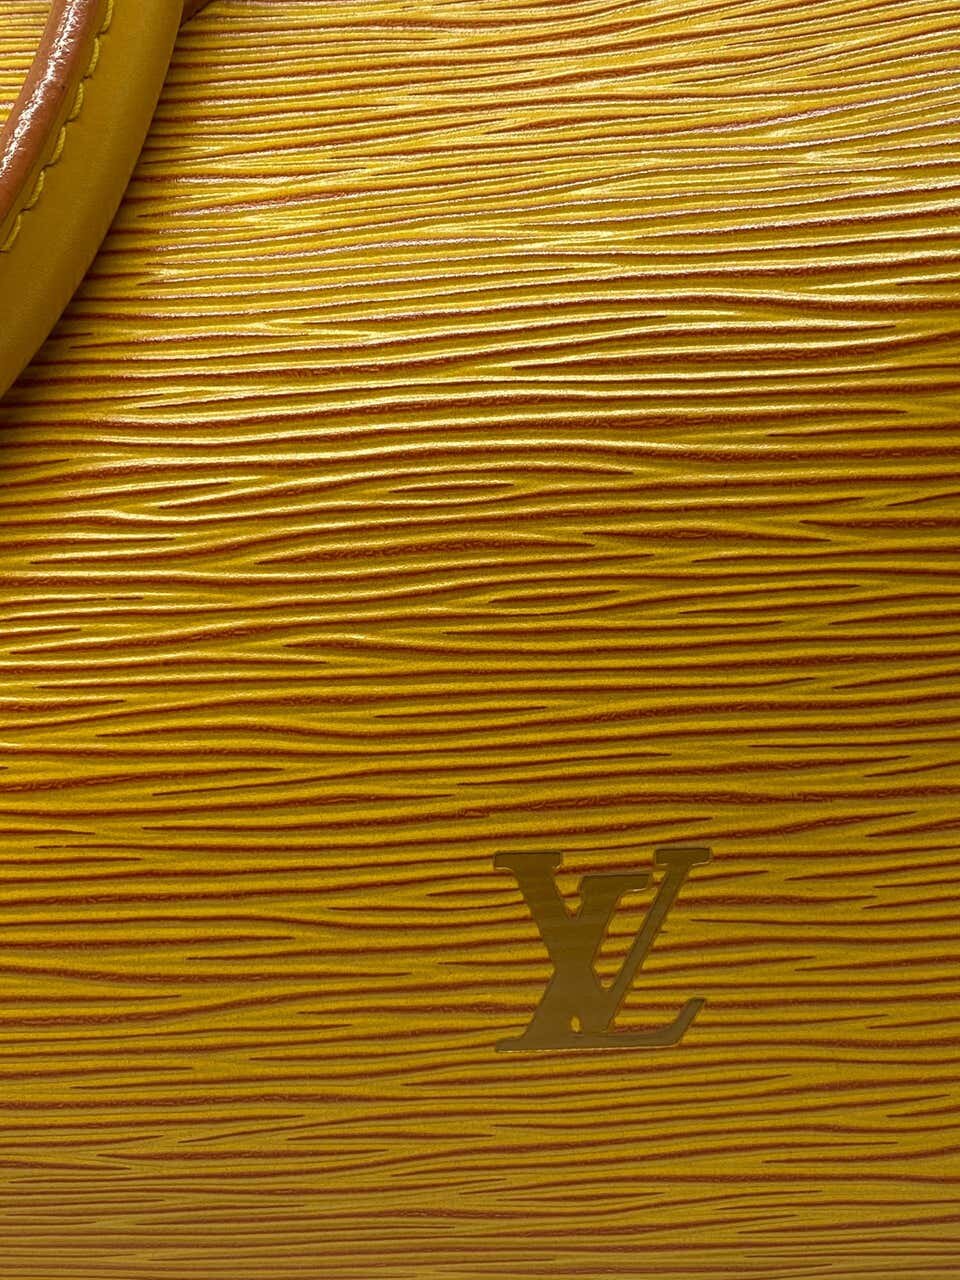 Louis Vuitton Speedy 25 mustard yellow